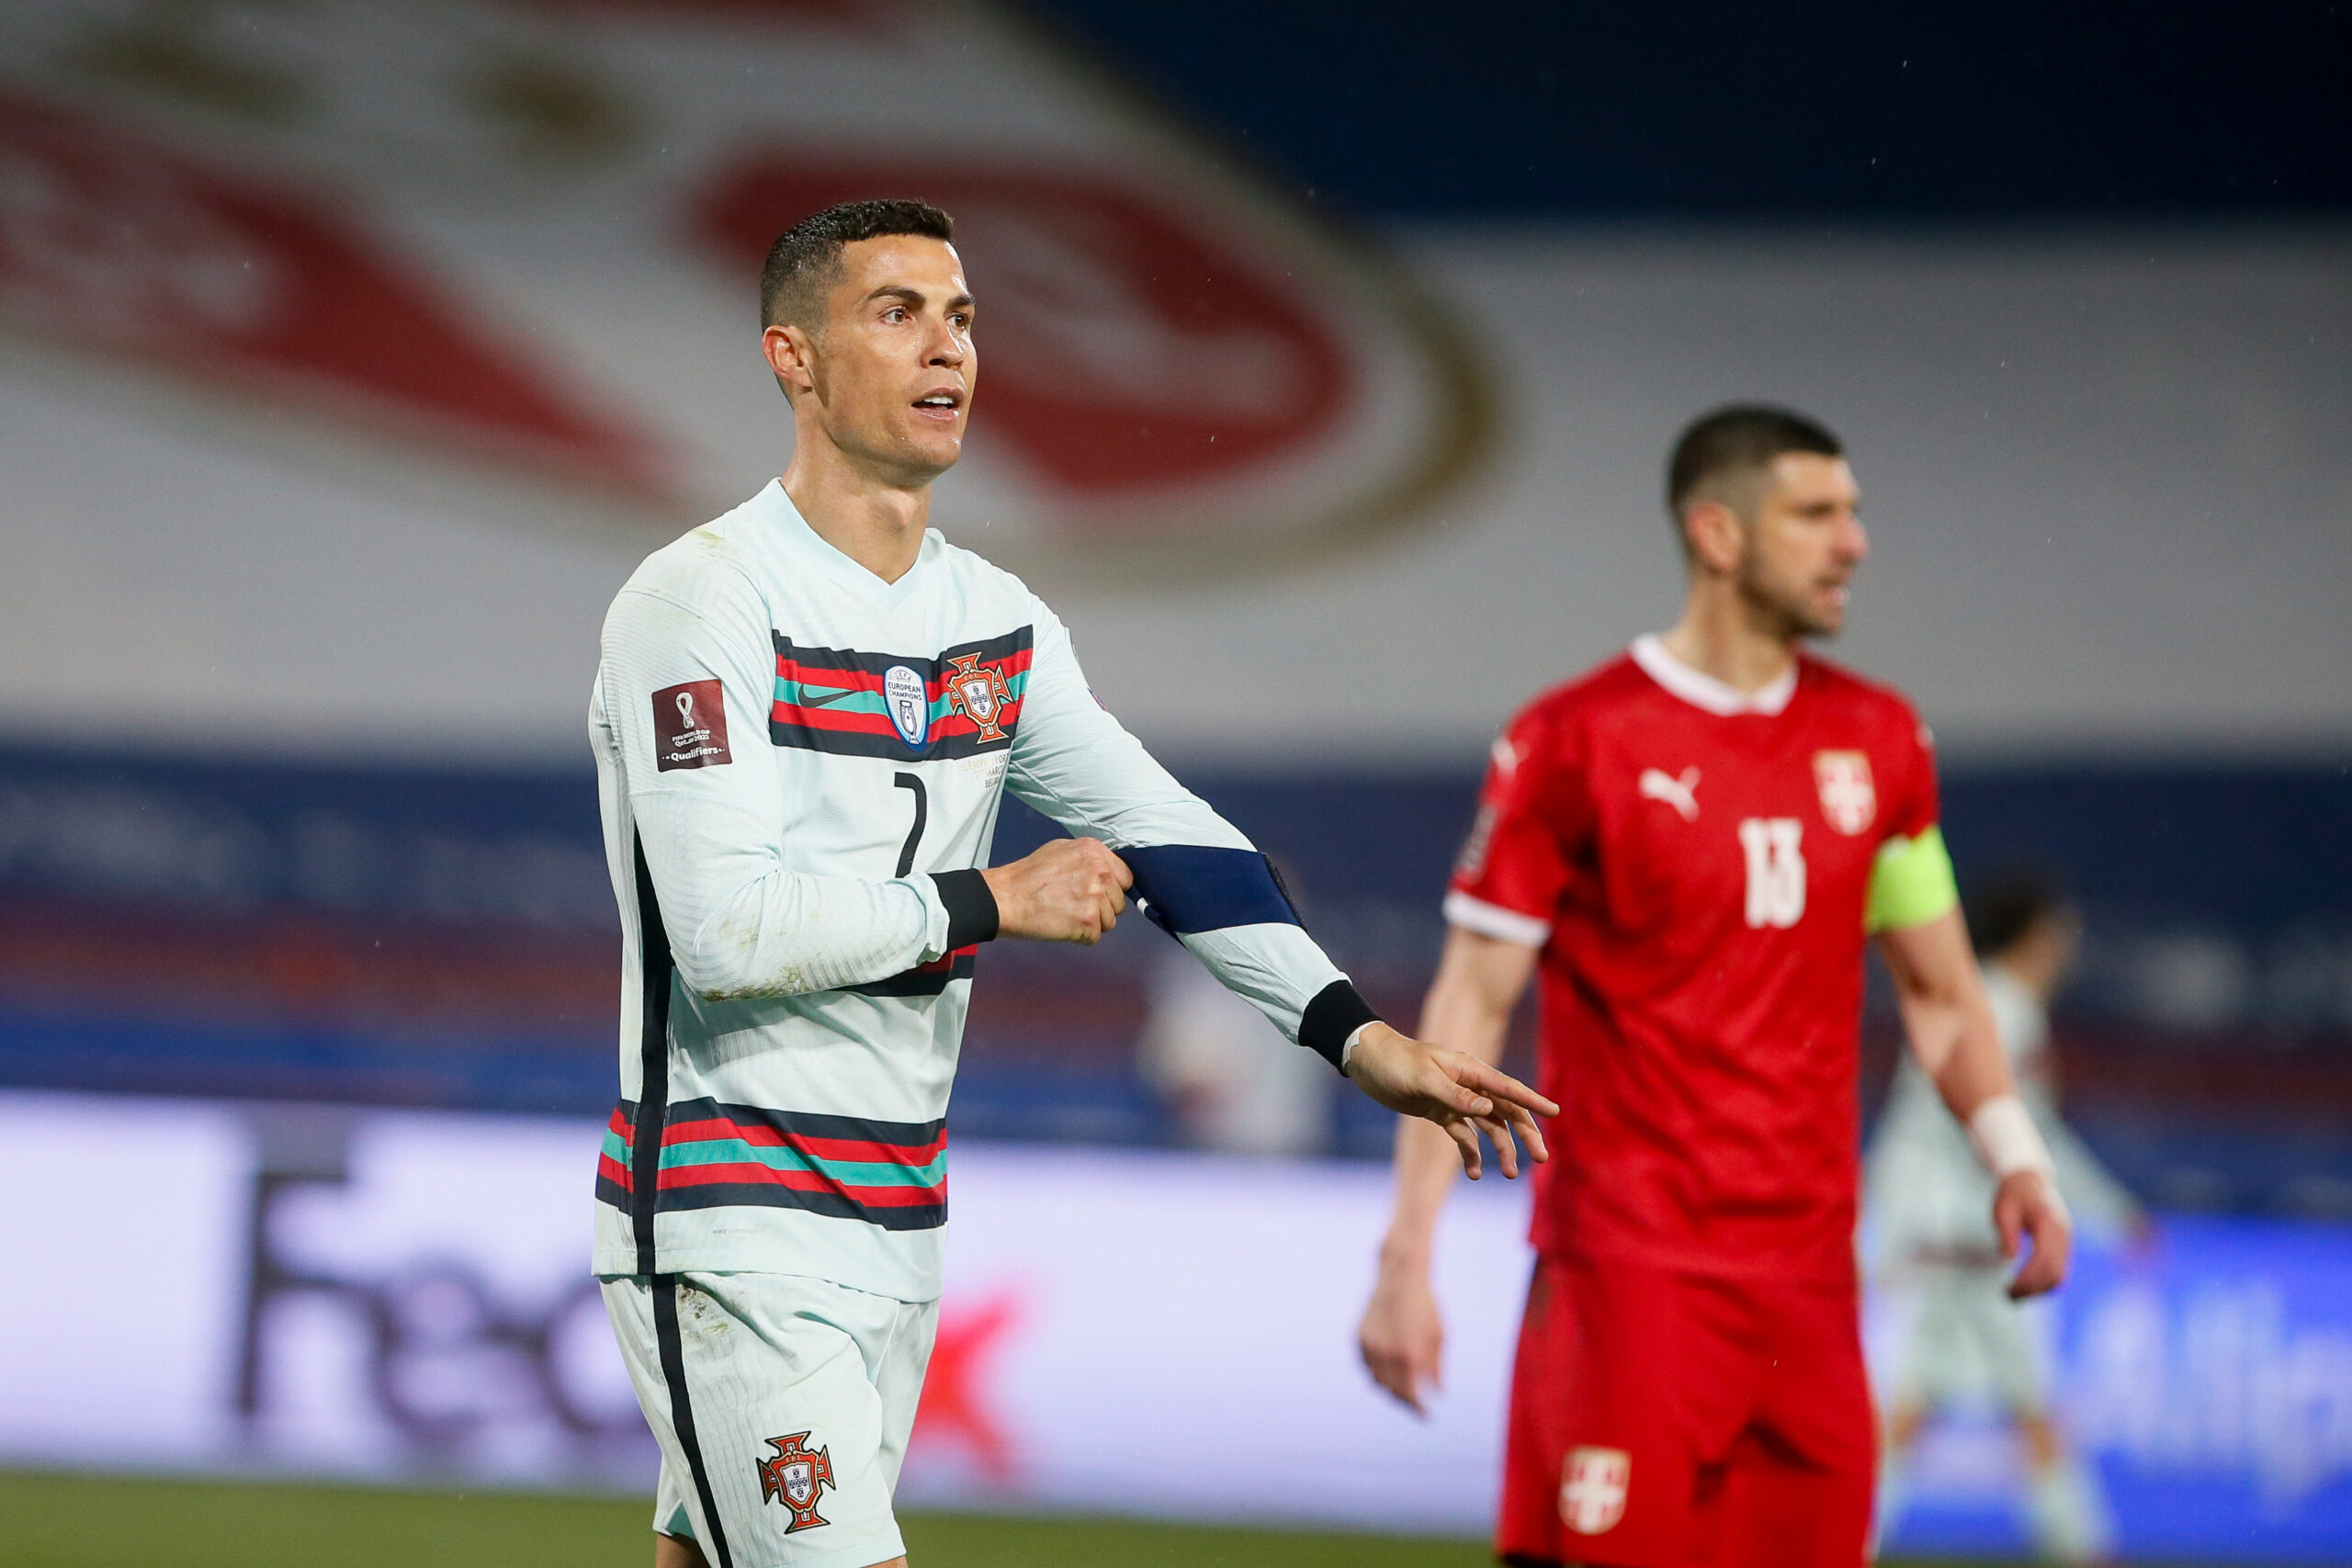 Portugal vence Turquia por 3 a 1 e se aproxima da Copa do Mundo